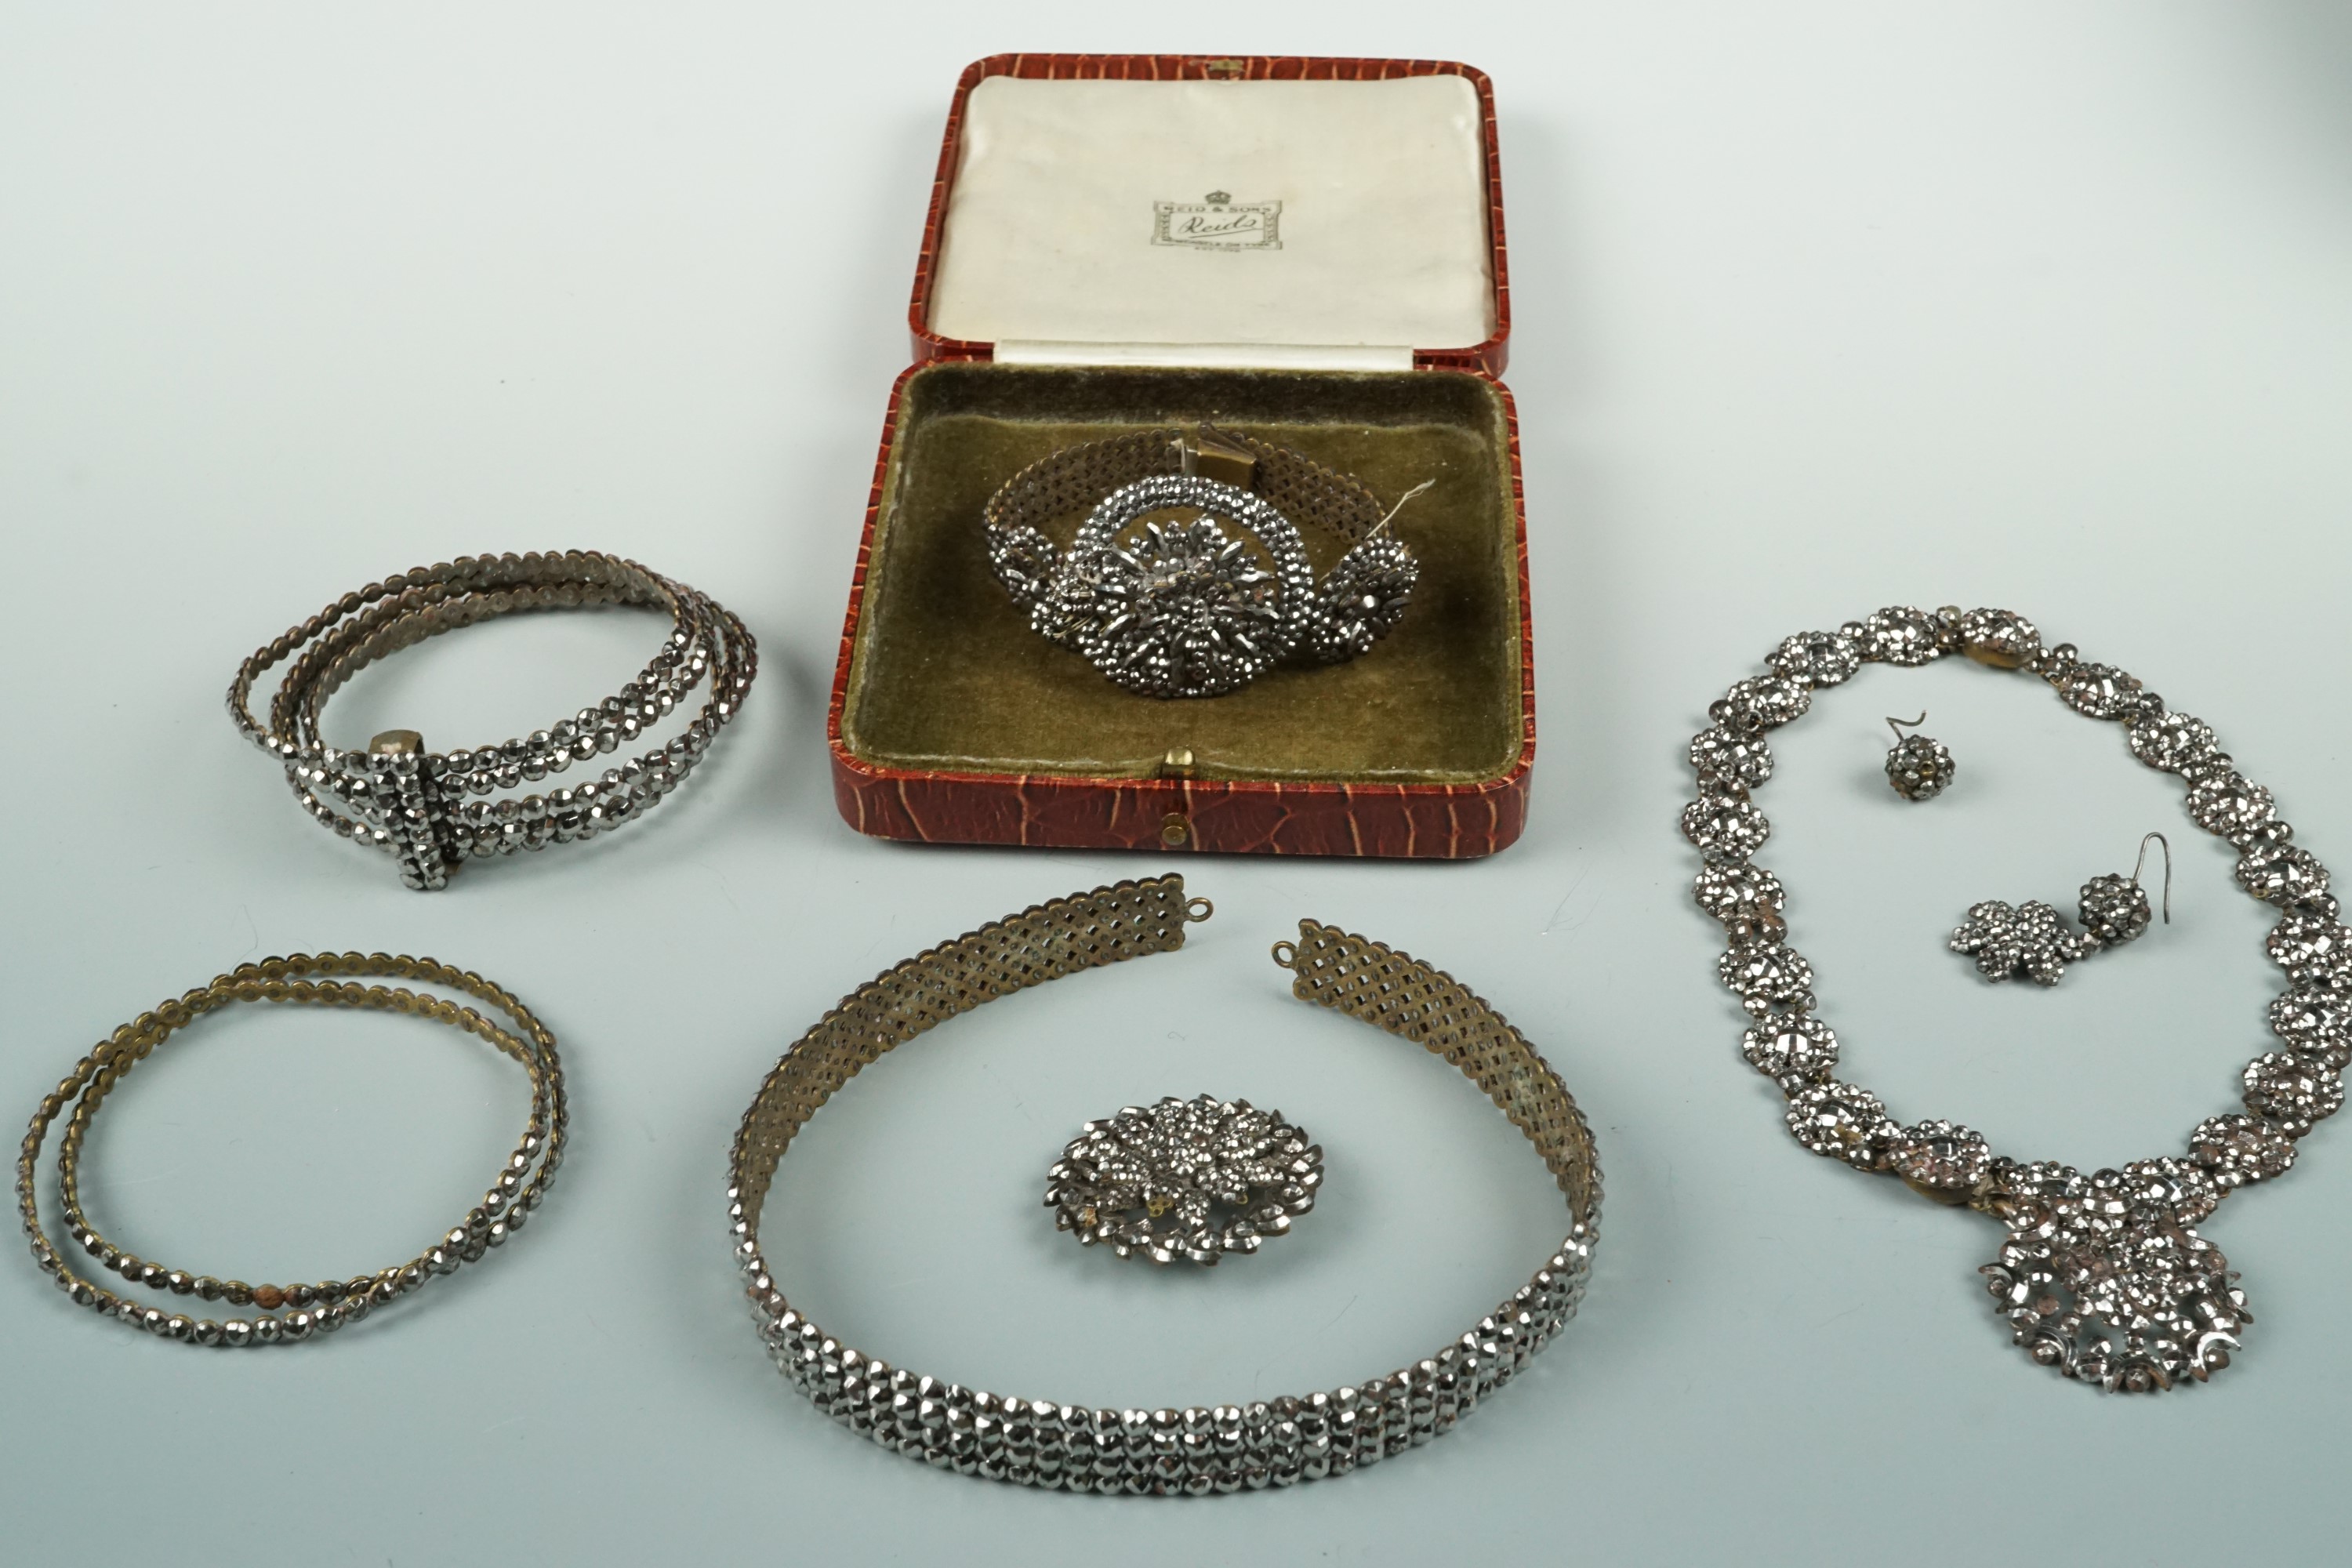 Antique cut steel jewellery parure, comprising pendant necklace, choker, bracelet, bangles,